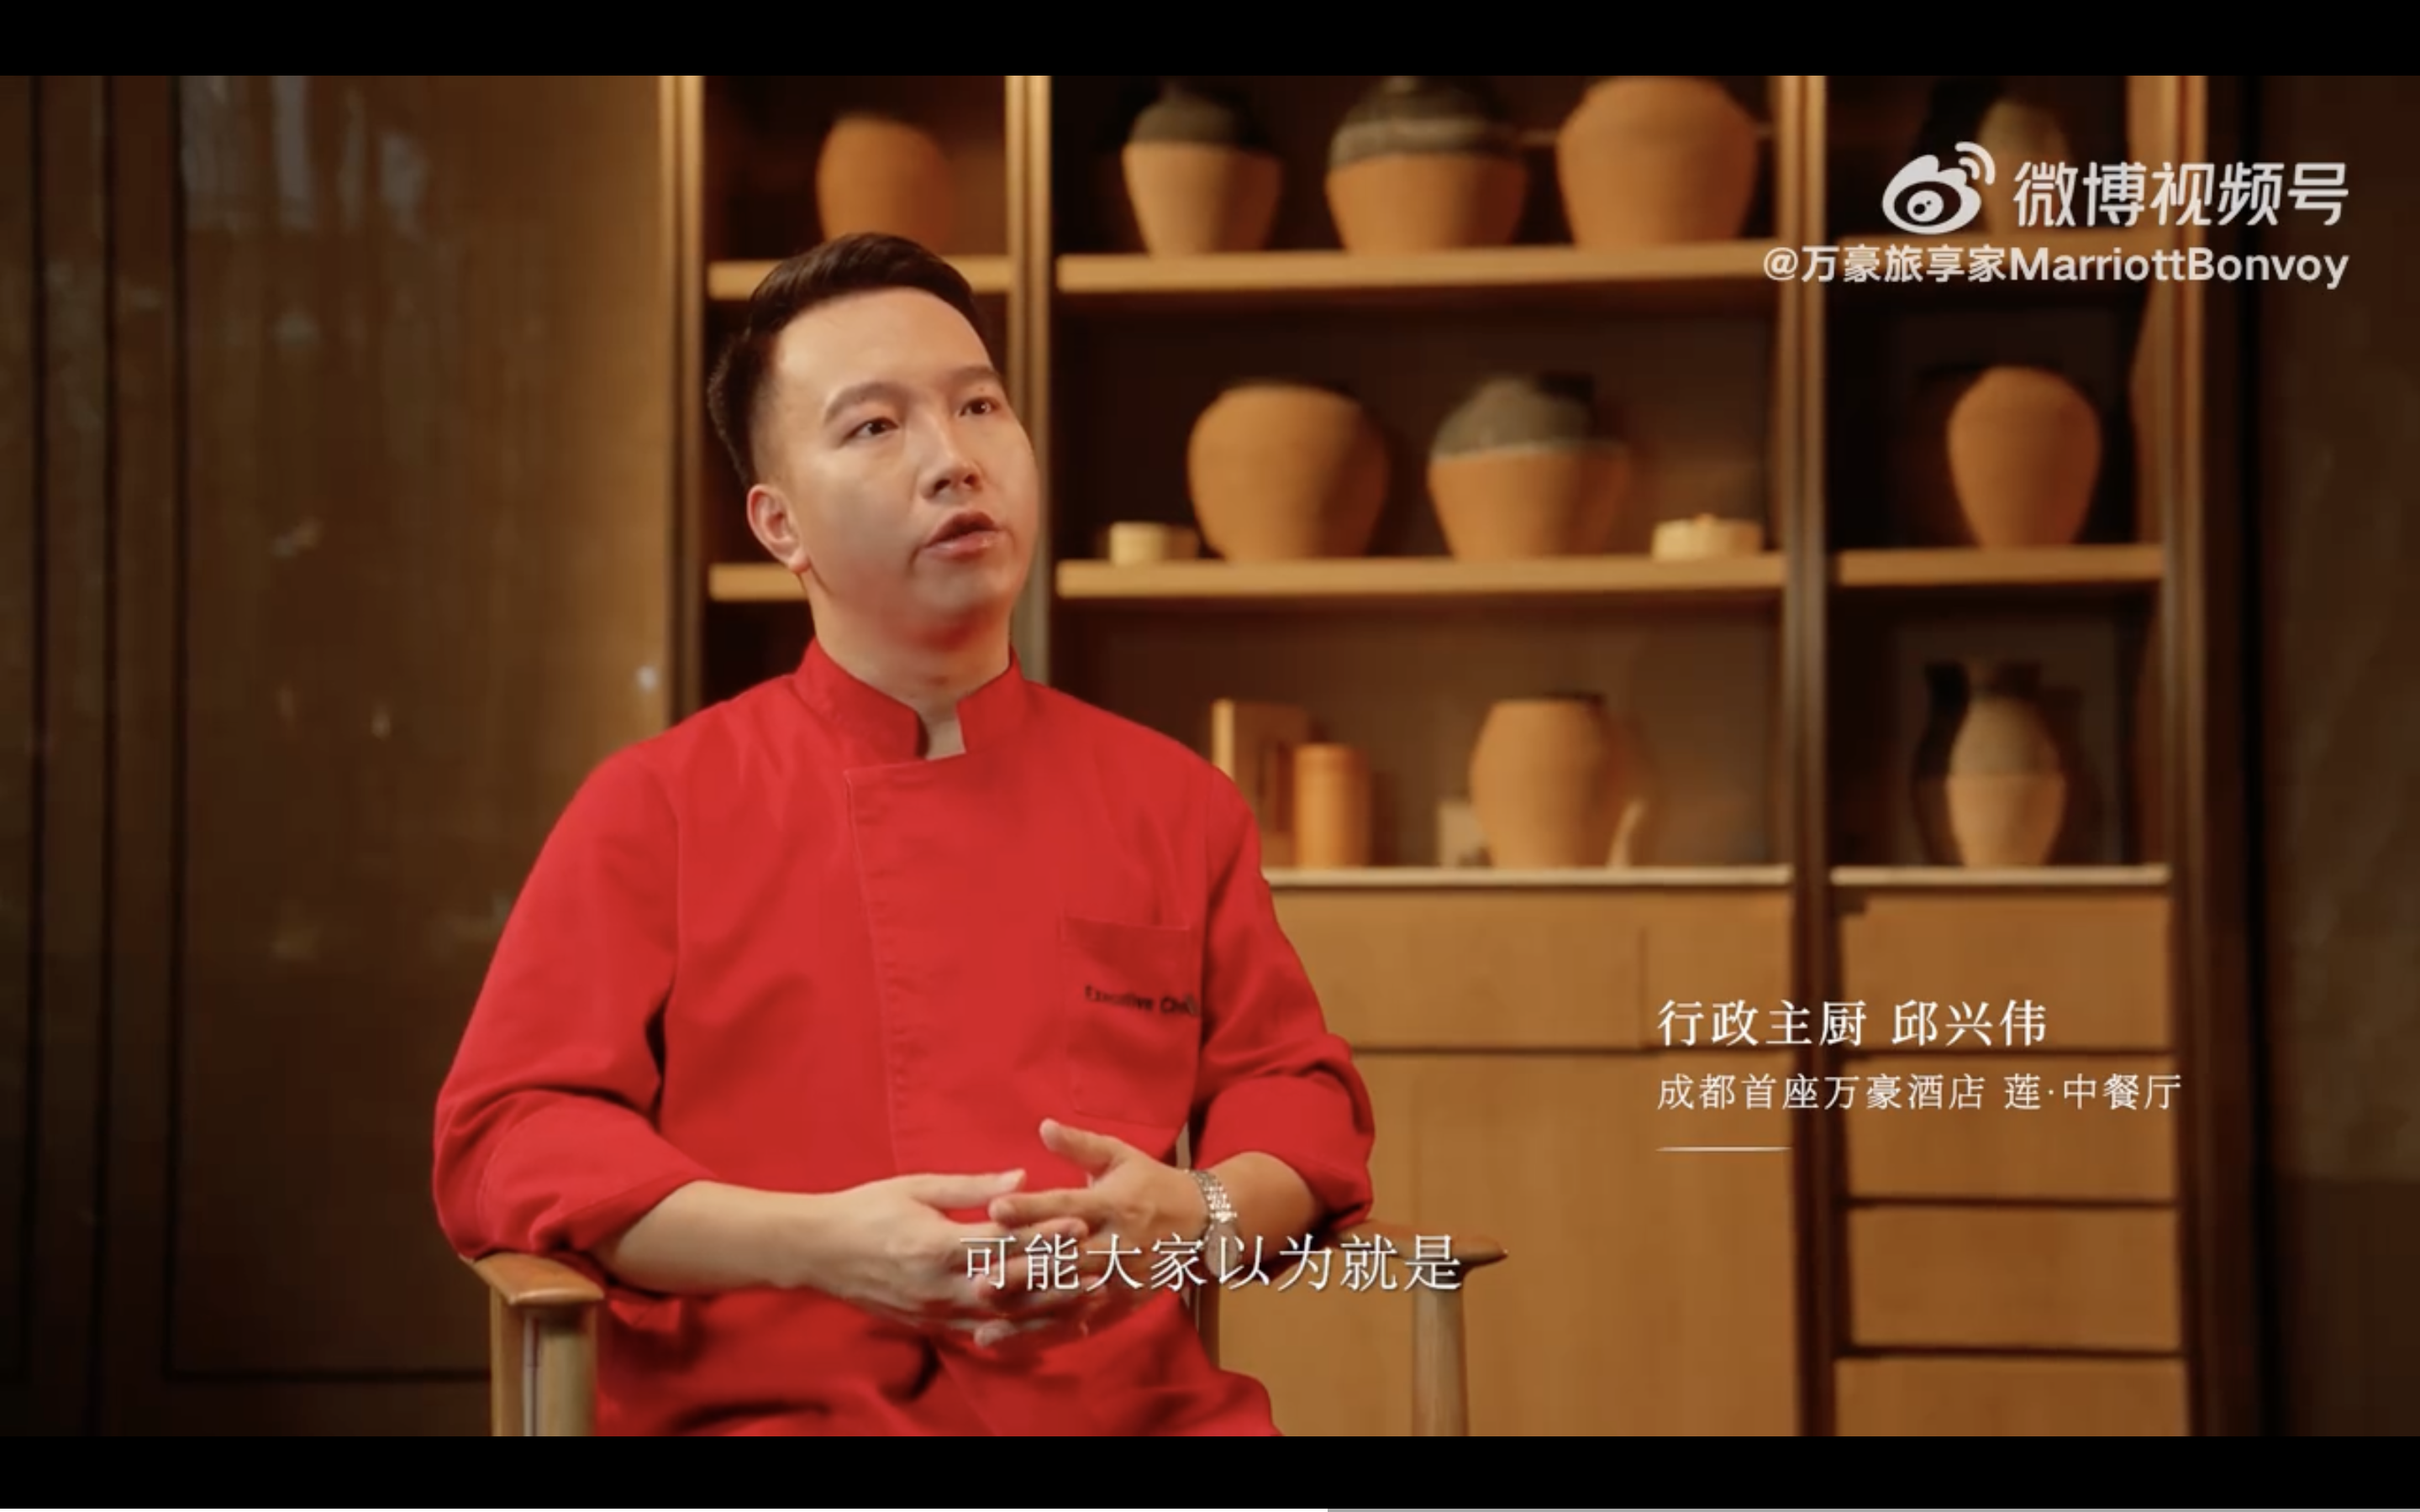 万豪旅享家 × 陈晓卿推出系列美食纪录片《识厨啖饭》